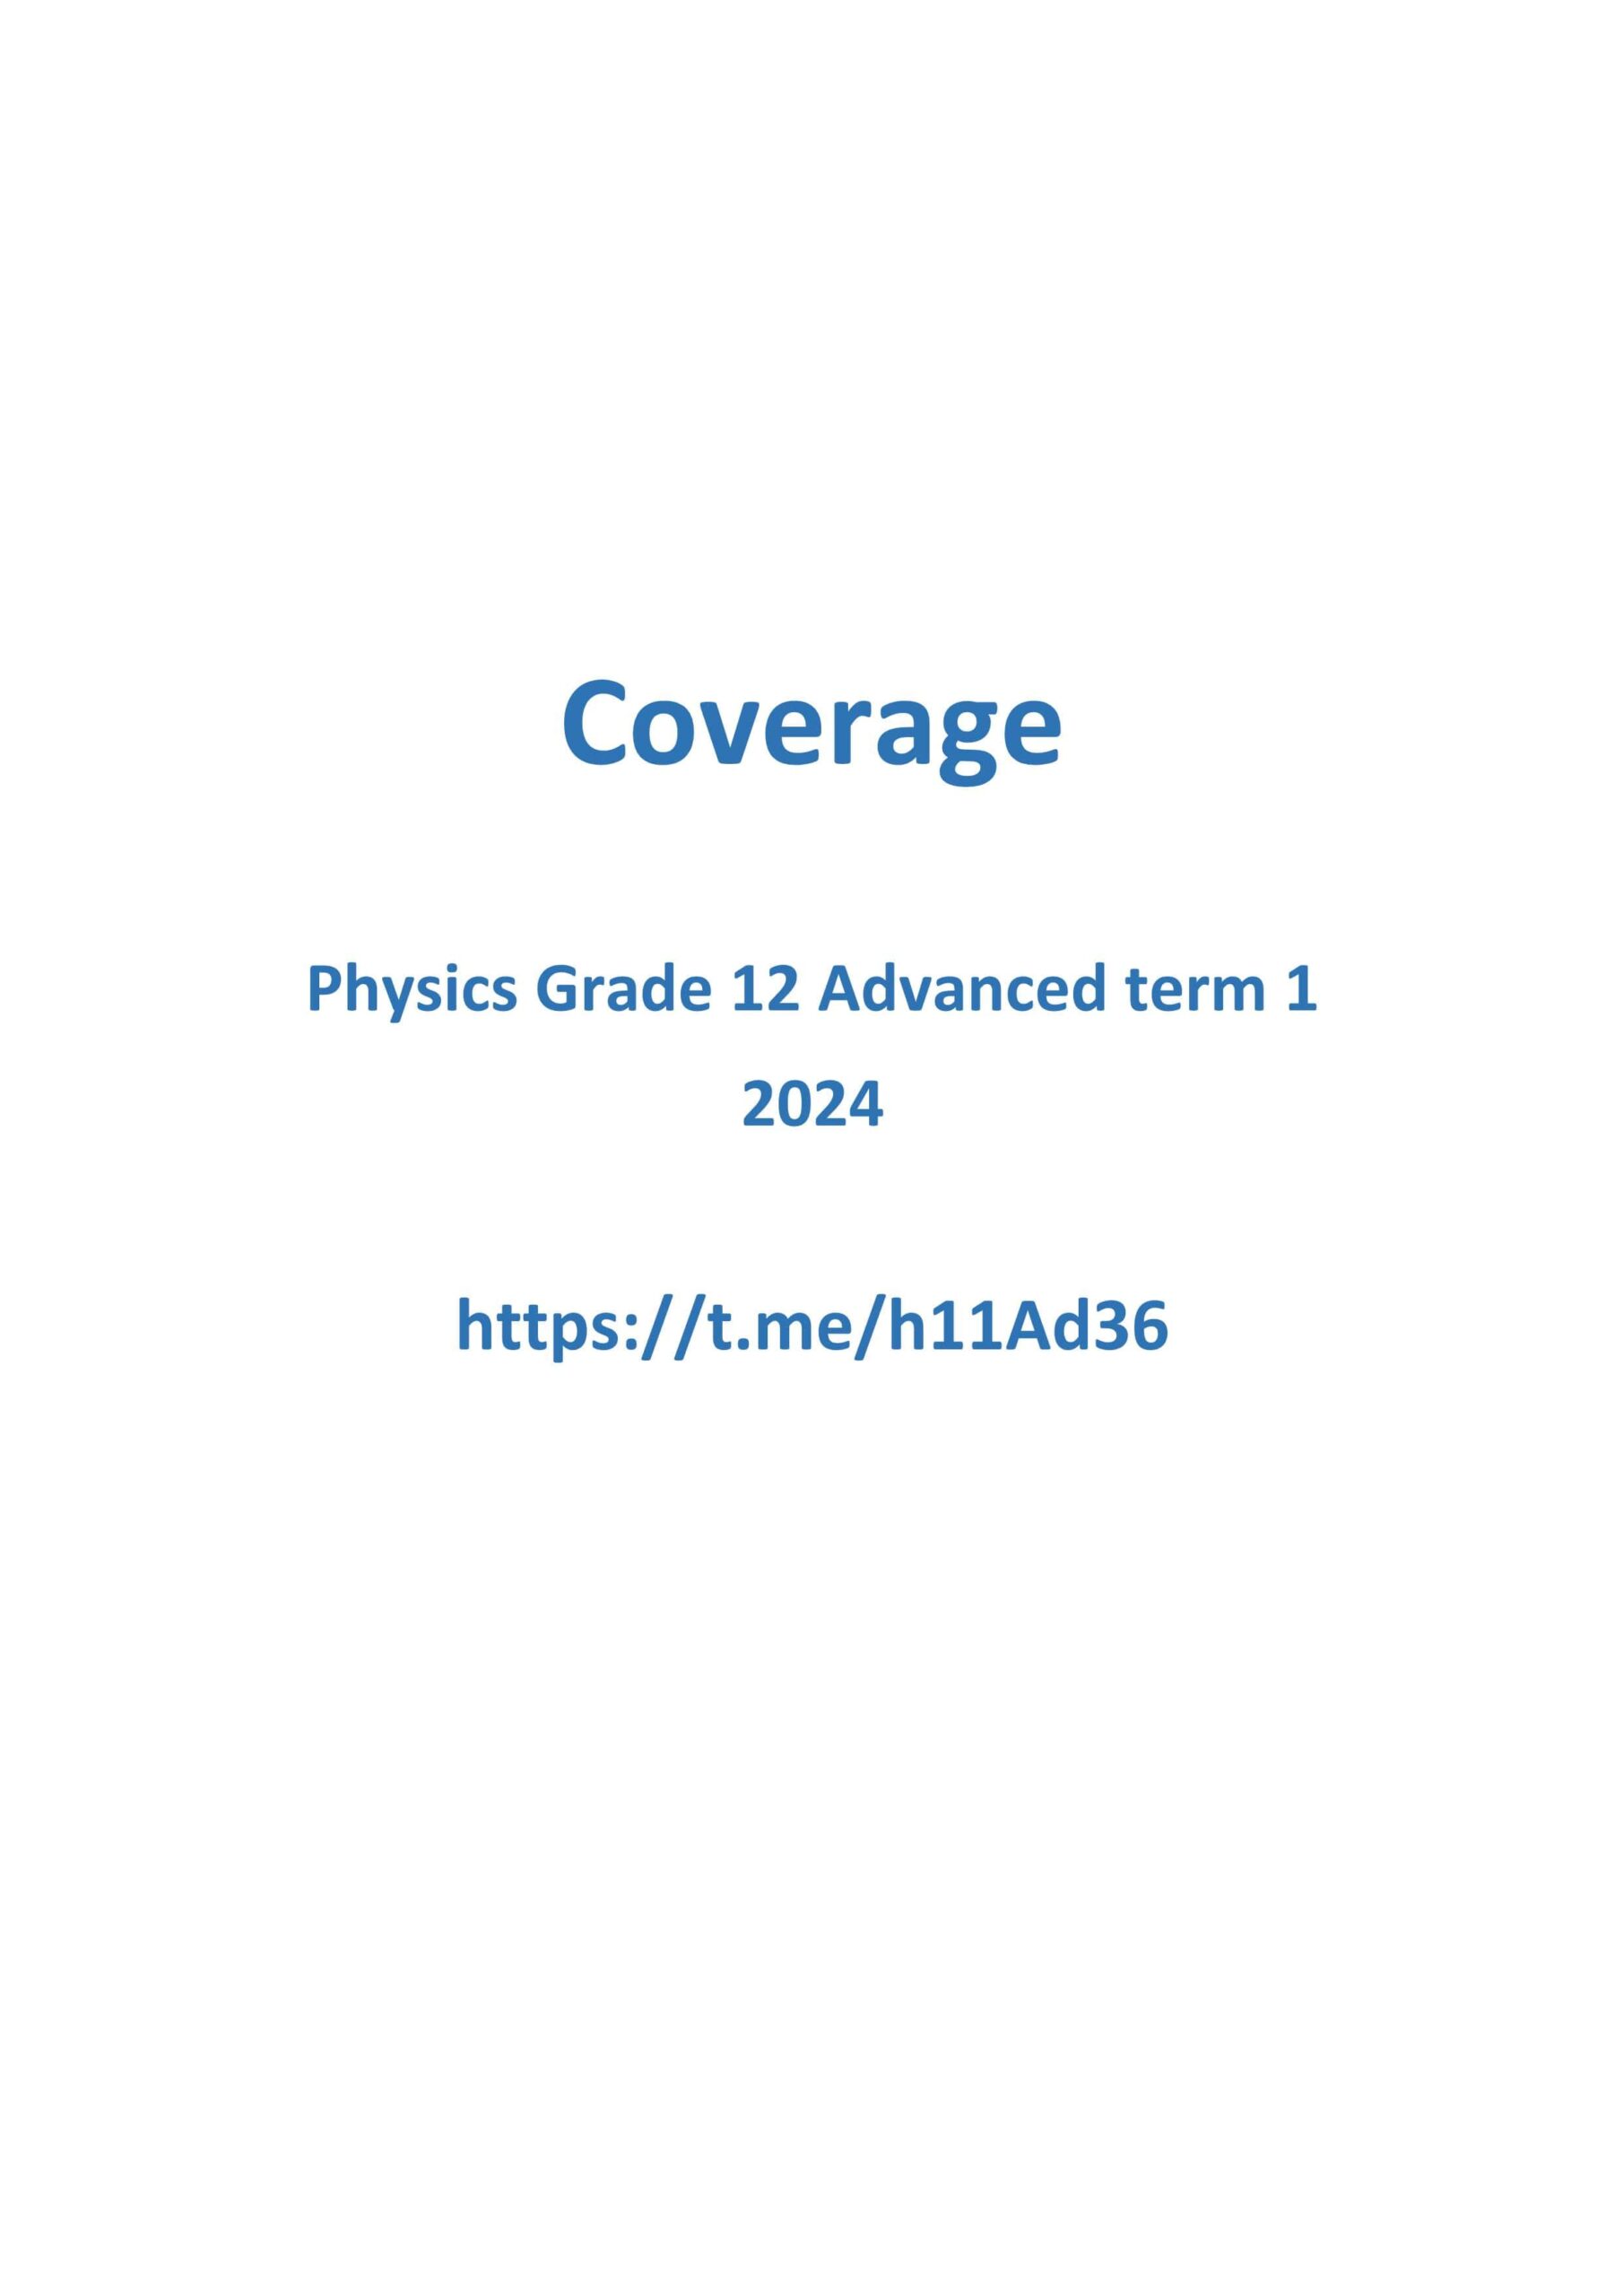 الصفحات المهمة اللغة الإنجليزية لامتحان الفيزياء الصف الثاني عشر متقدم الفصل الدراسي الأول 2023-2024